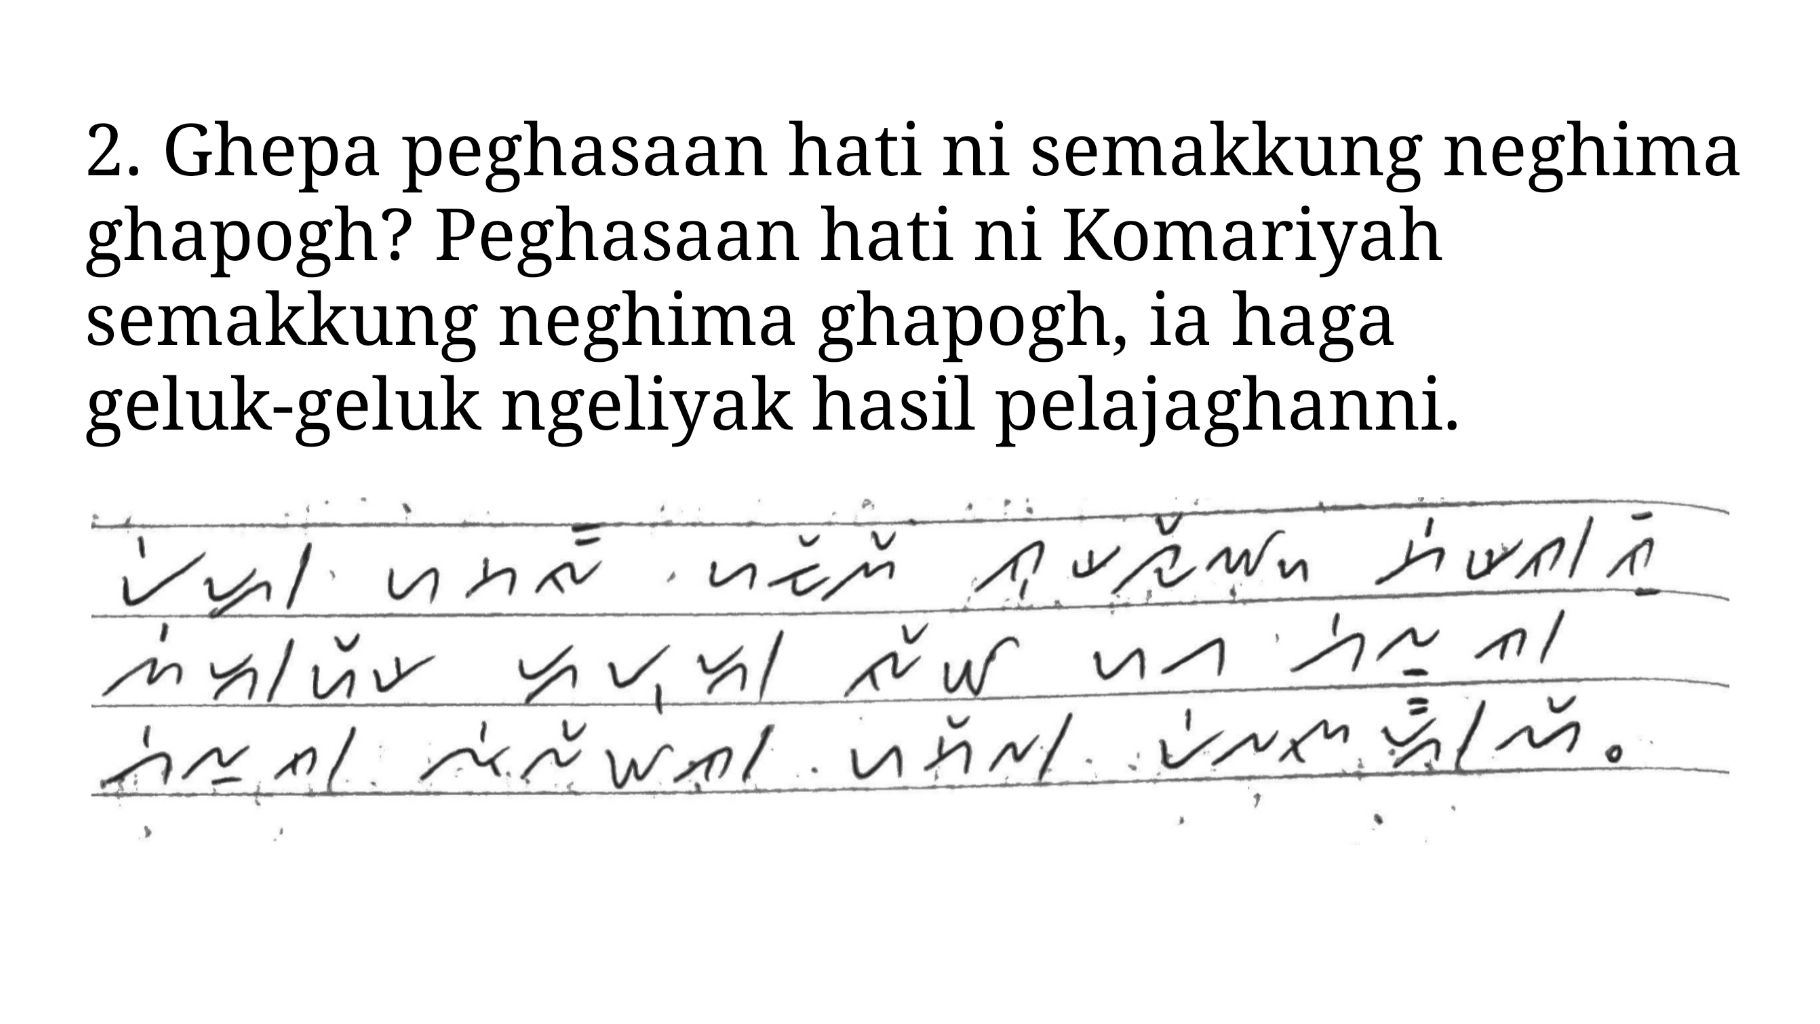 kunci jawaban nomor 2 Bahasa Lampung kelas 4 SD halaman 54 55 56 57 aksara Lampung 